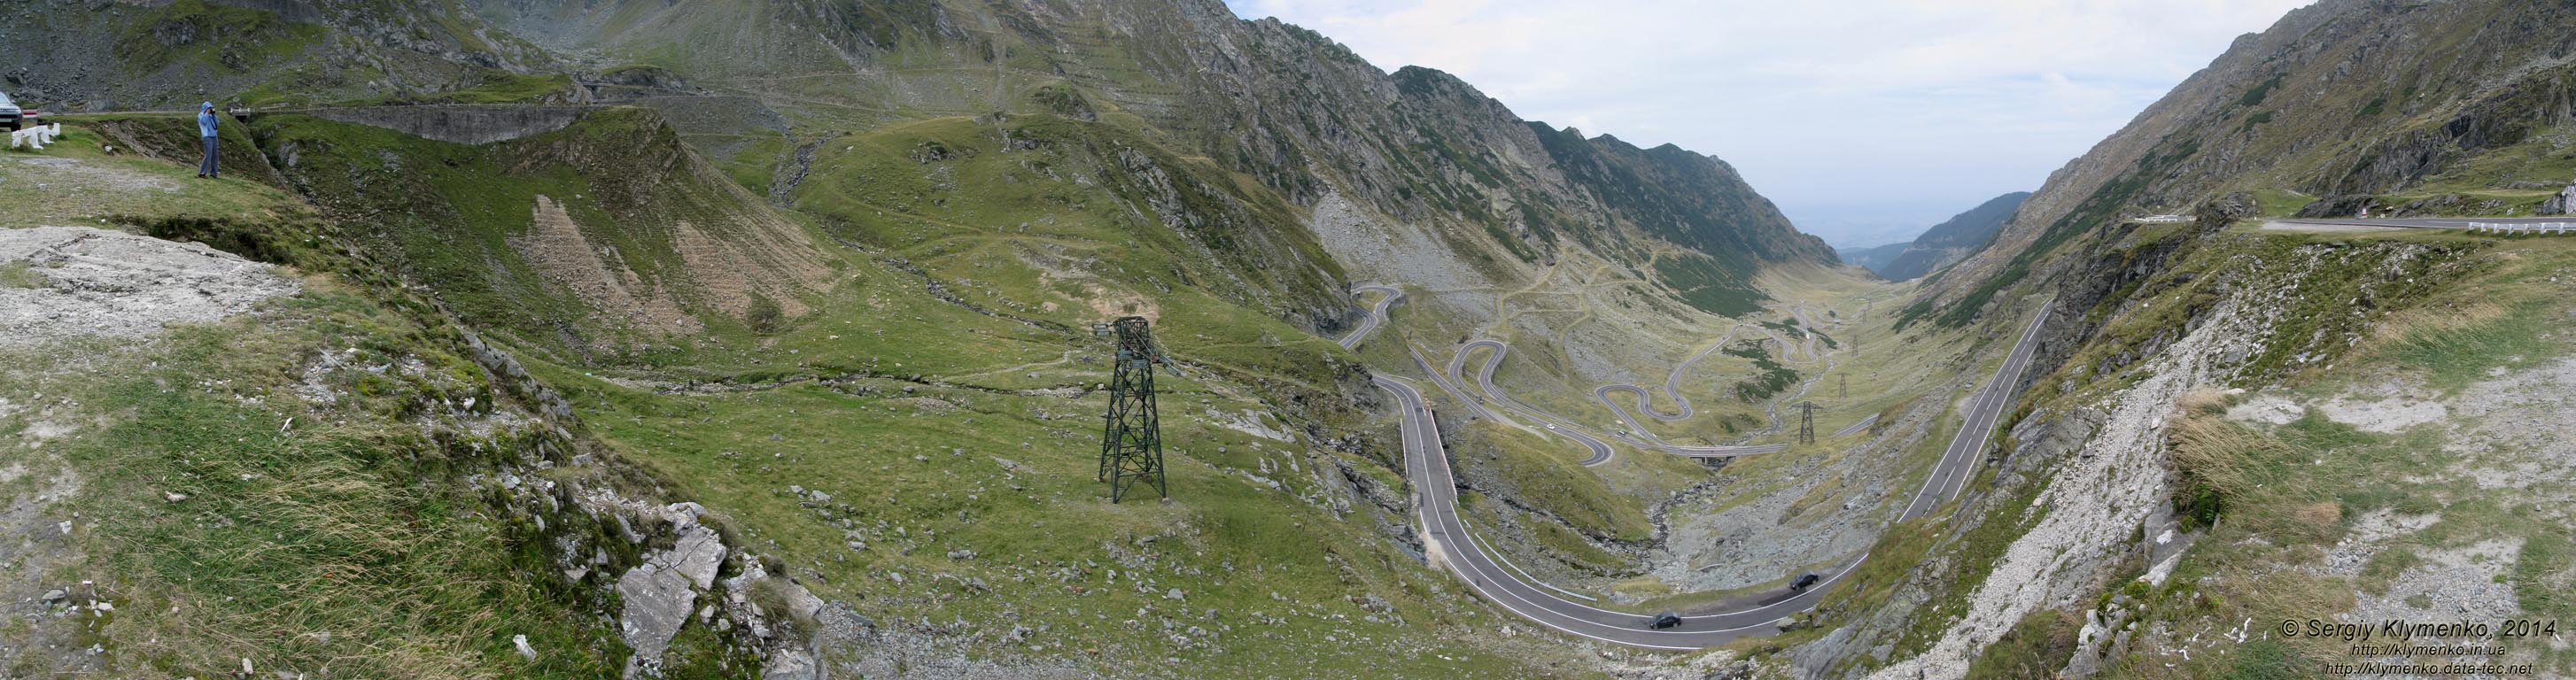 Румыния (Romania), Трансфэгэрашское шоссе (Transfagarasan). Фото.
Высота над уровнем моря ~1900 м, северные склоны горного массива Фэгэраш (Muntii Fagarasului). Панорама ~200° (45°36'30"N, 24°37'02"E).